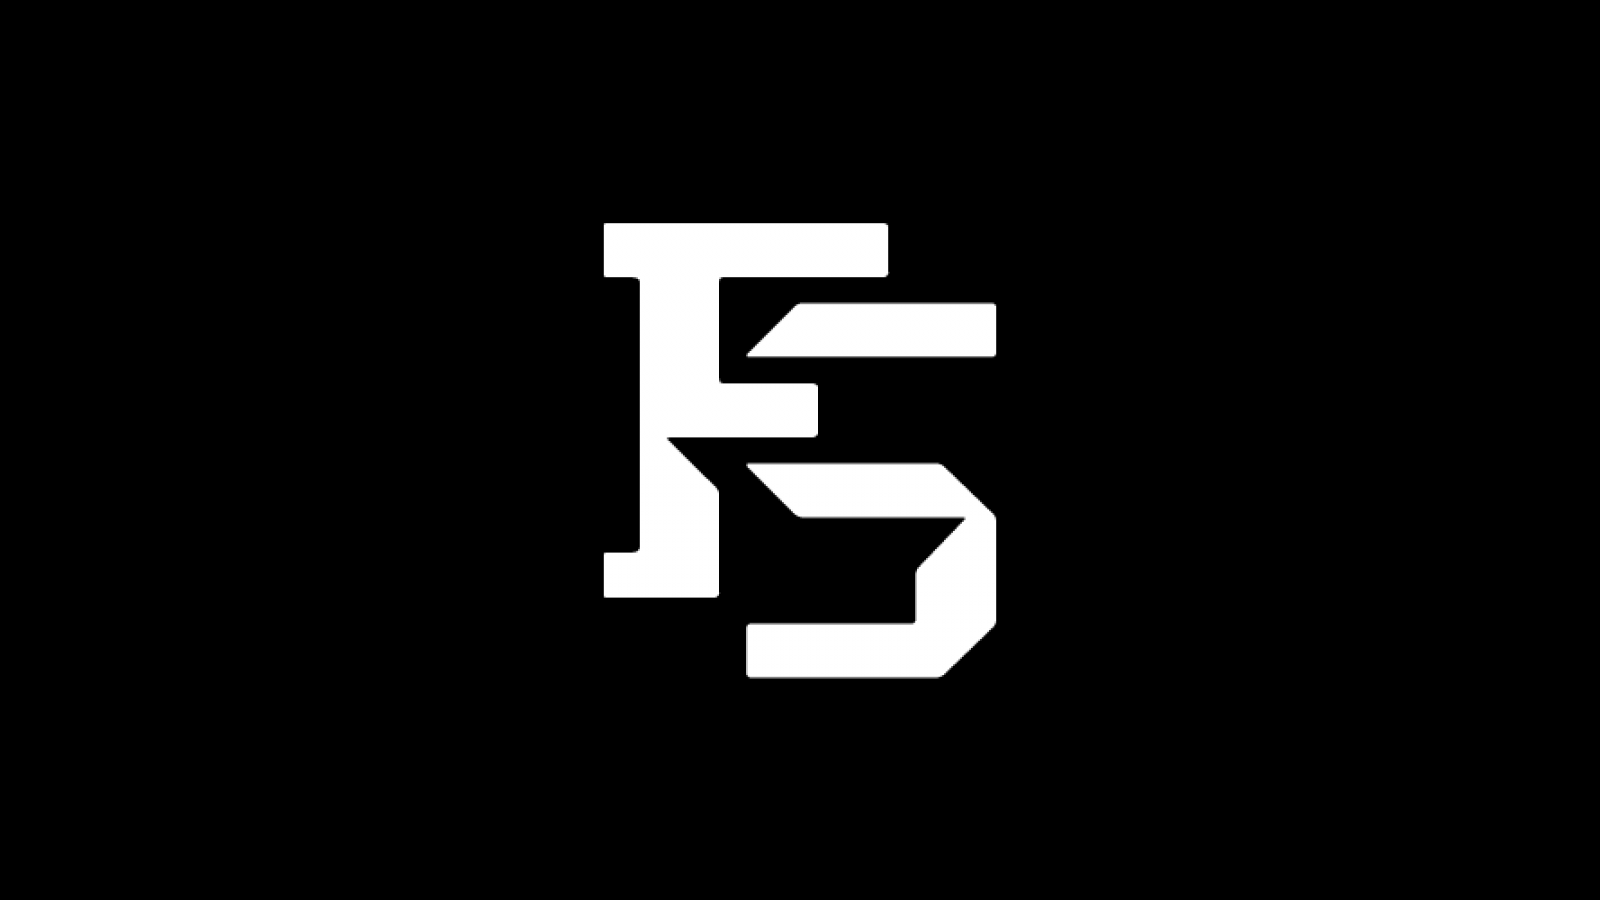 Sd s f. Лого FS. Логотип с буквами FS. Картинка FS. Буква s + f.